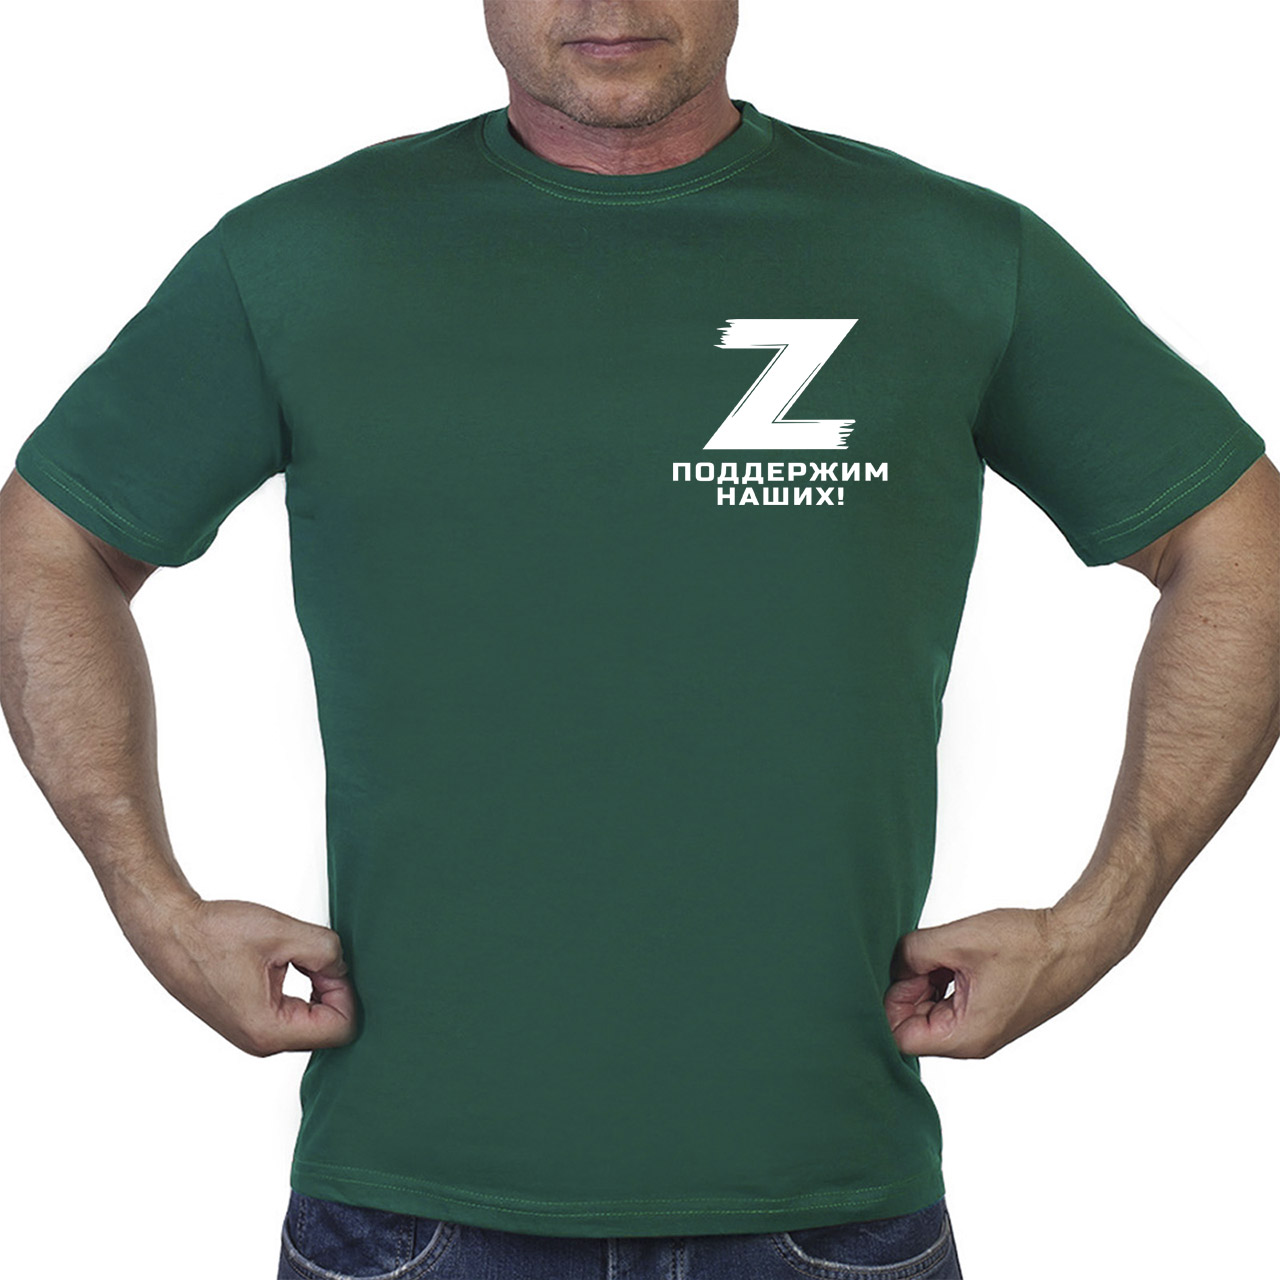 Купить зеленую футболку "Z"